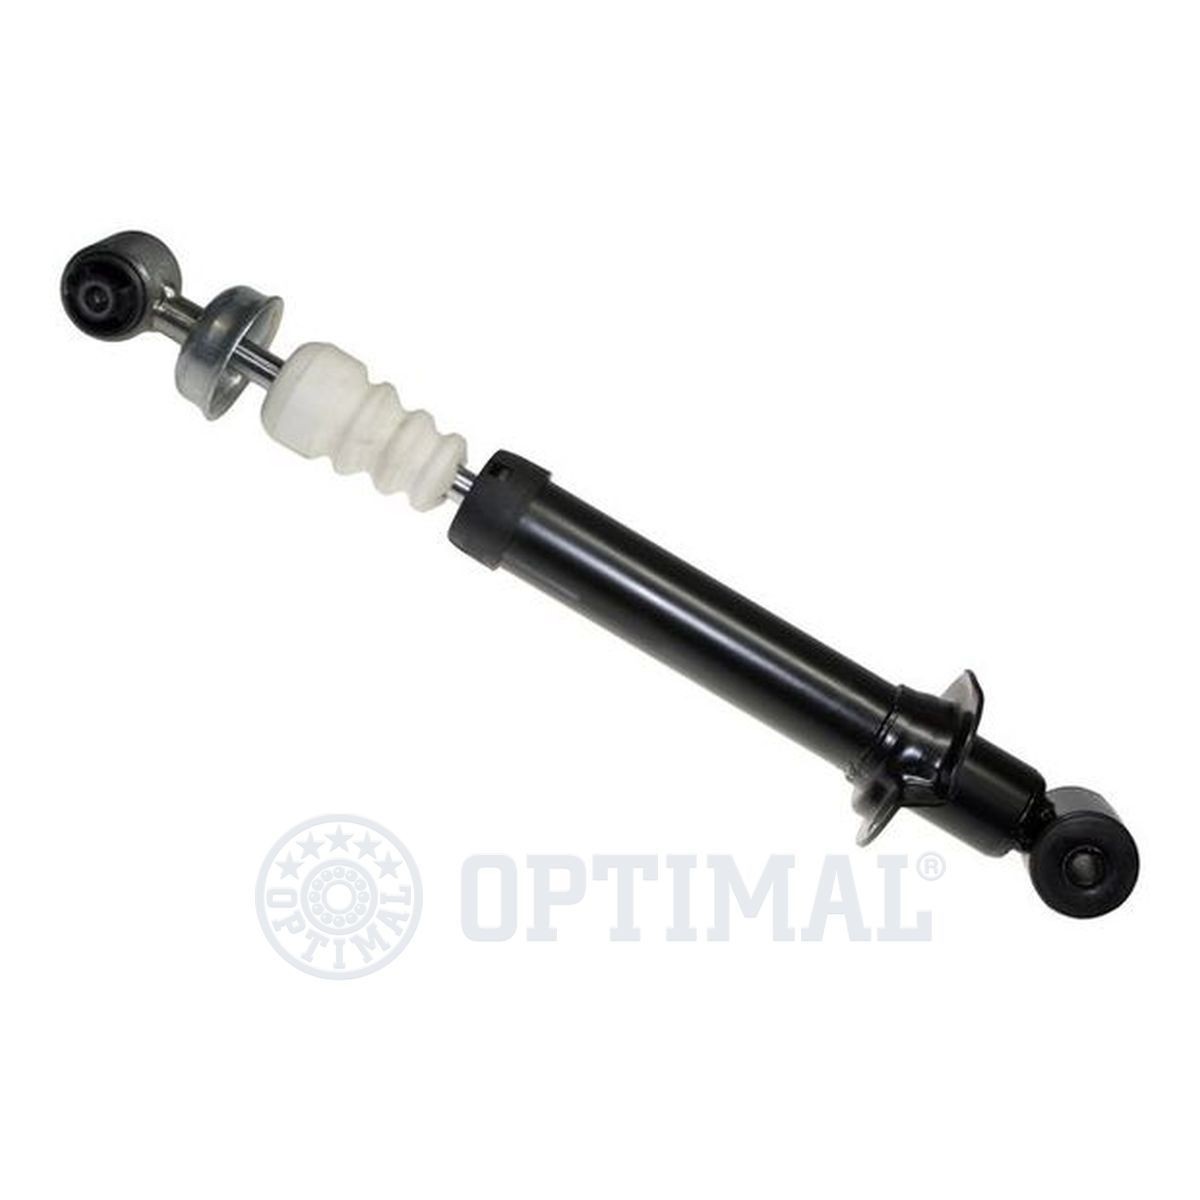 OPTIMAL Rear Axle, Gas Pressure, Spring-bearing Damper, Top eye, Bottom eye Shocks A-1208G buy